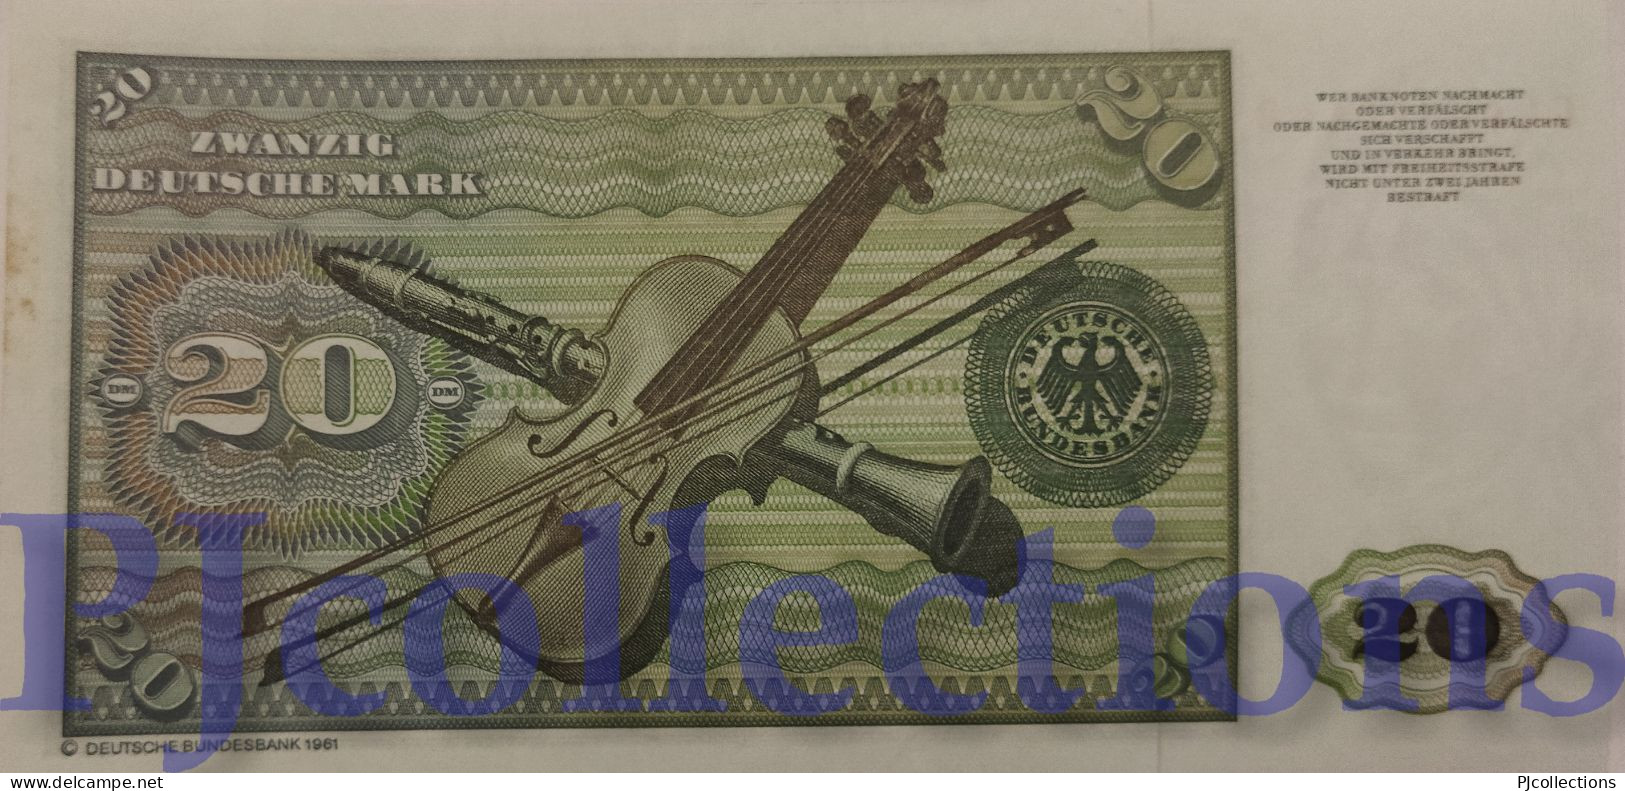 GERMANY FEDERAL REPUBLIC 20 DEUTSCHE MARK 1980 PICK 32d AU/UNC - 20 Deutsche Mark